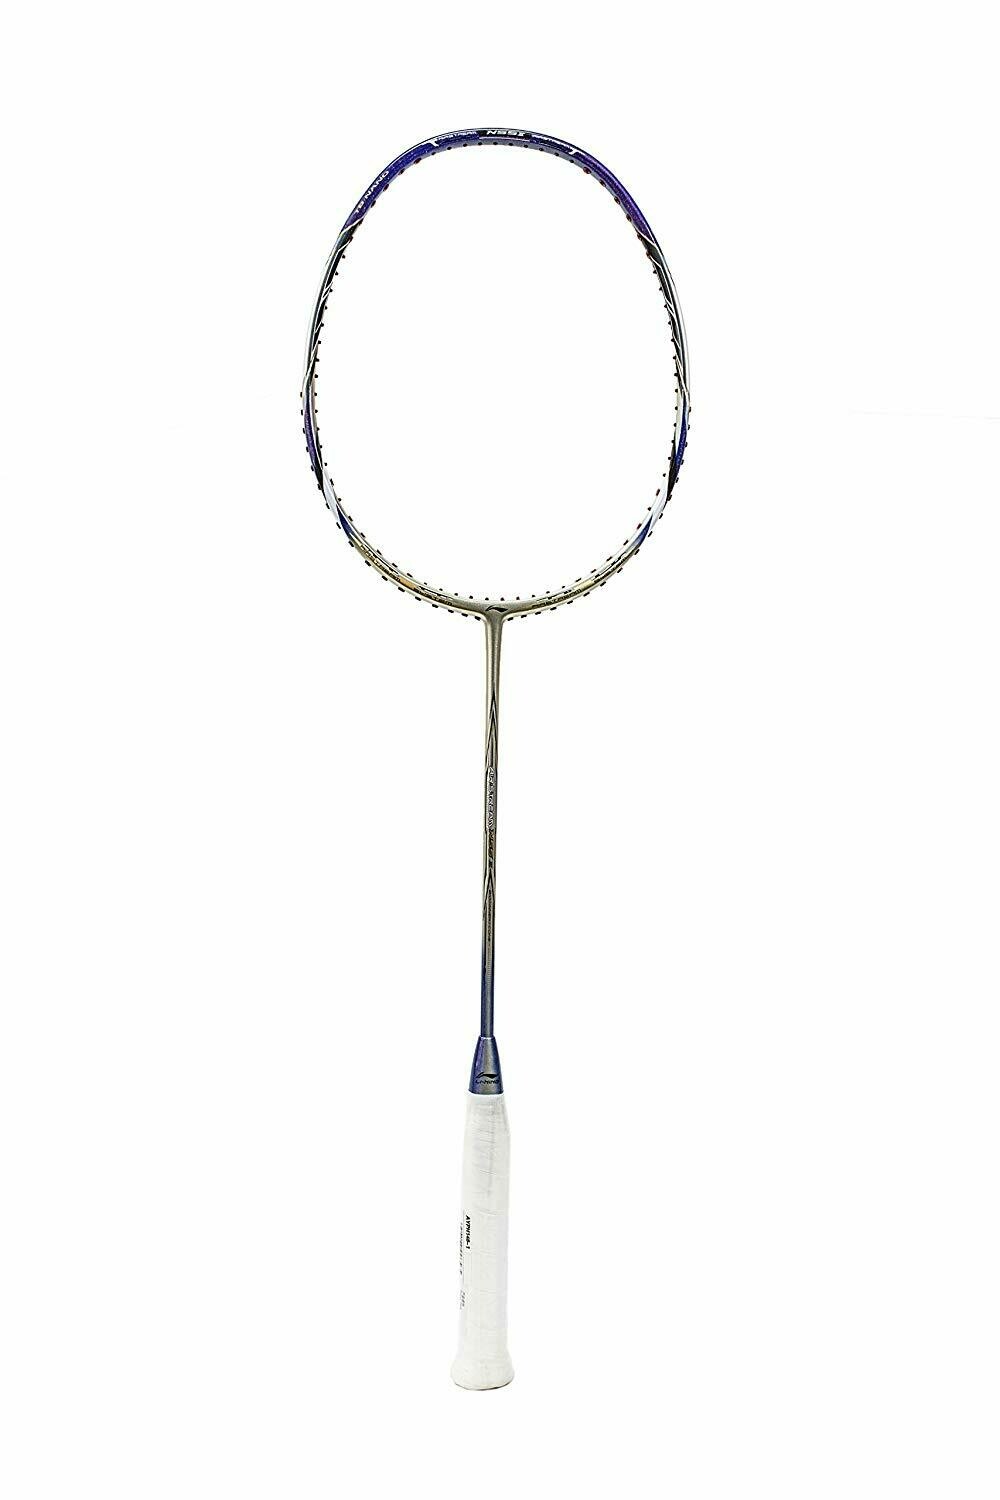 LI-NING Air-Steam N-55 III Badminton Racquet